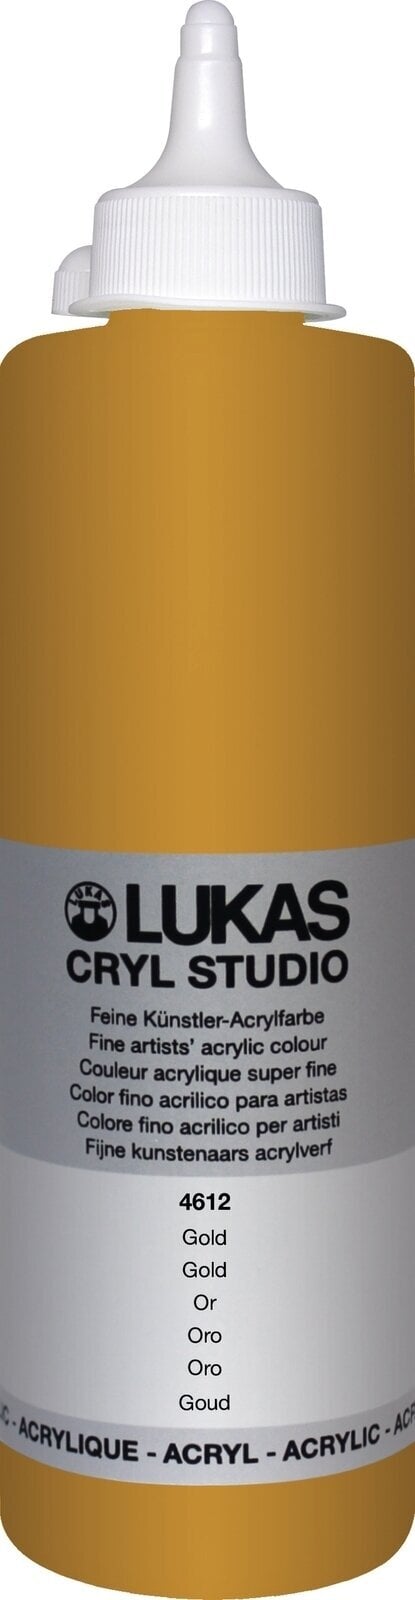 Akrylová barva Lukas Cryl Studio Akrylová barva 500 ml Zlatá